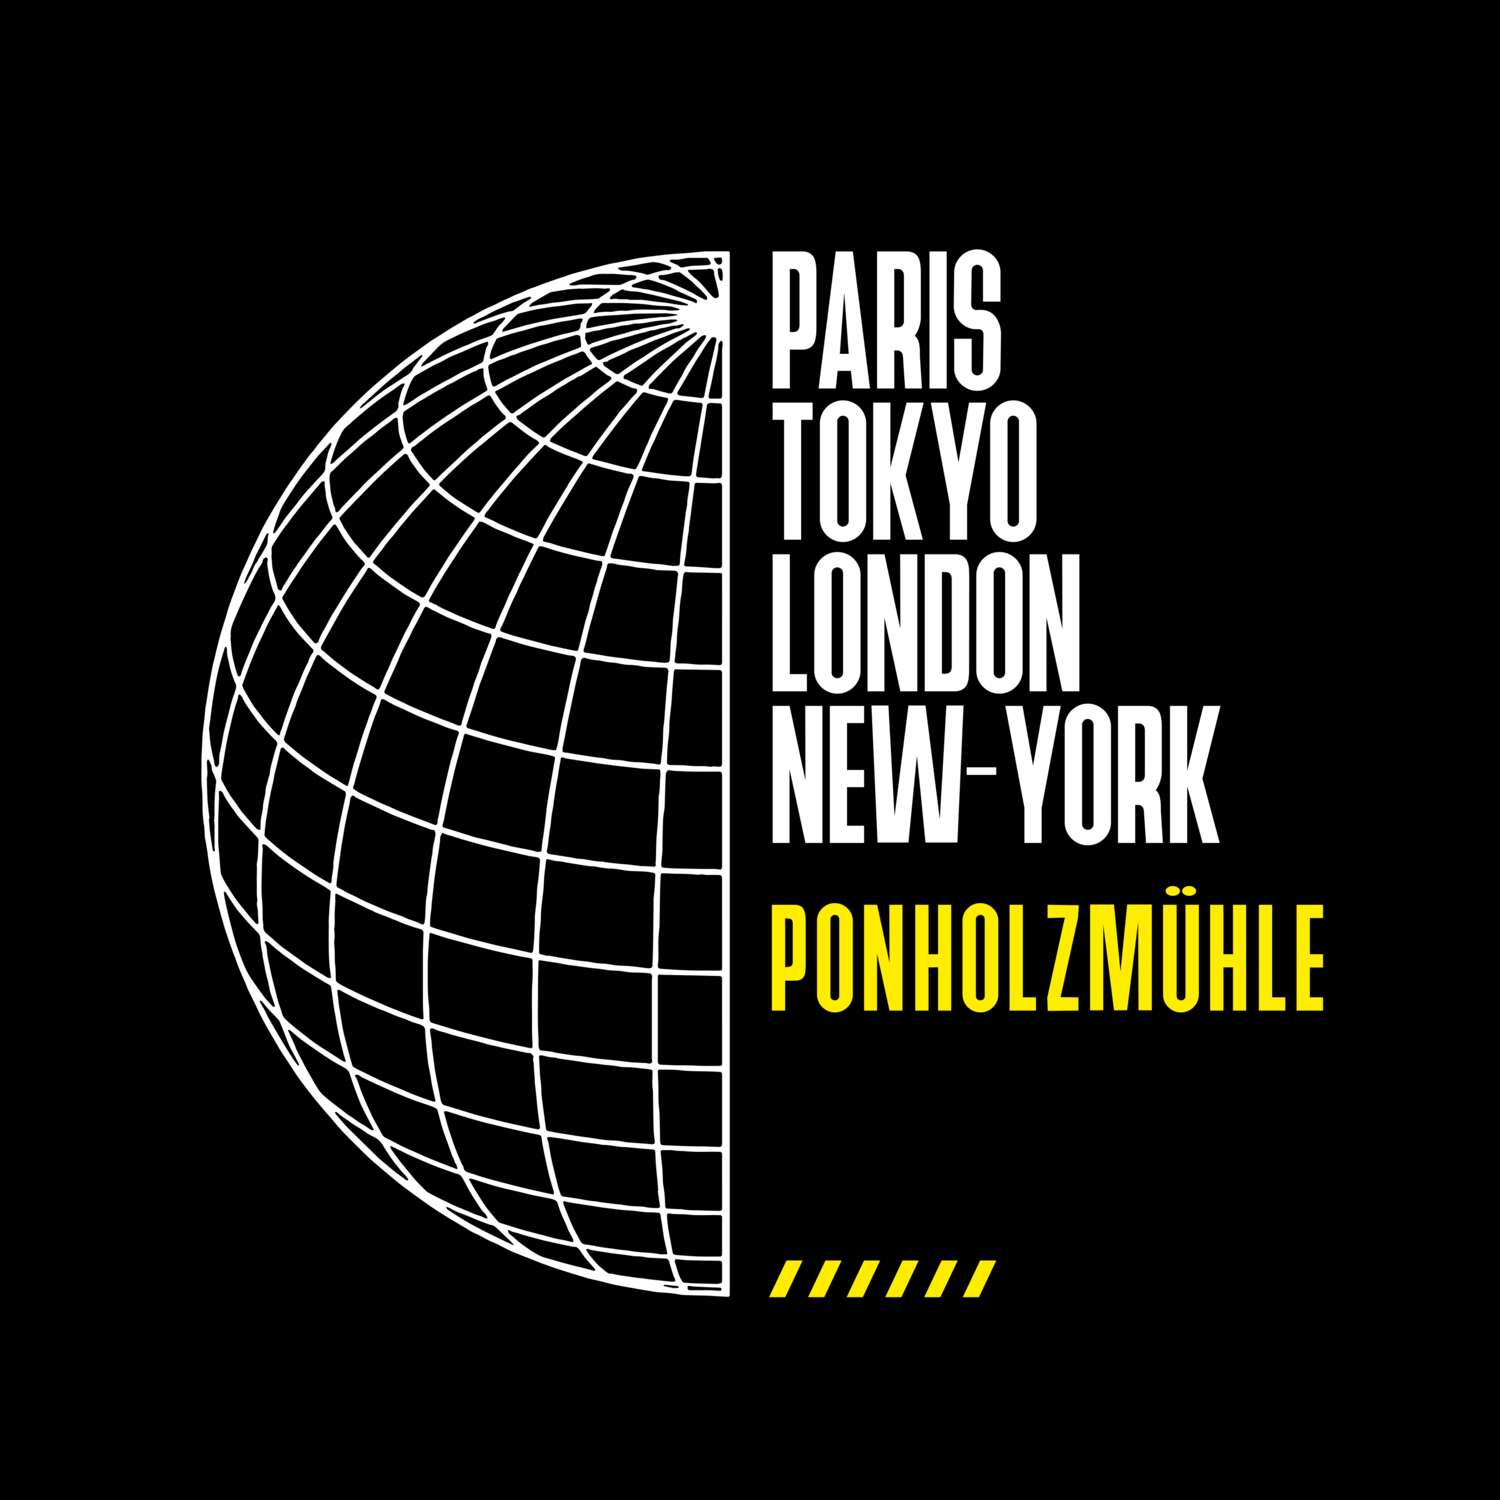 Ponholzmühle T-Shirt »Paris Tokyo London«